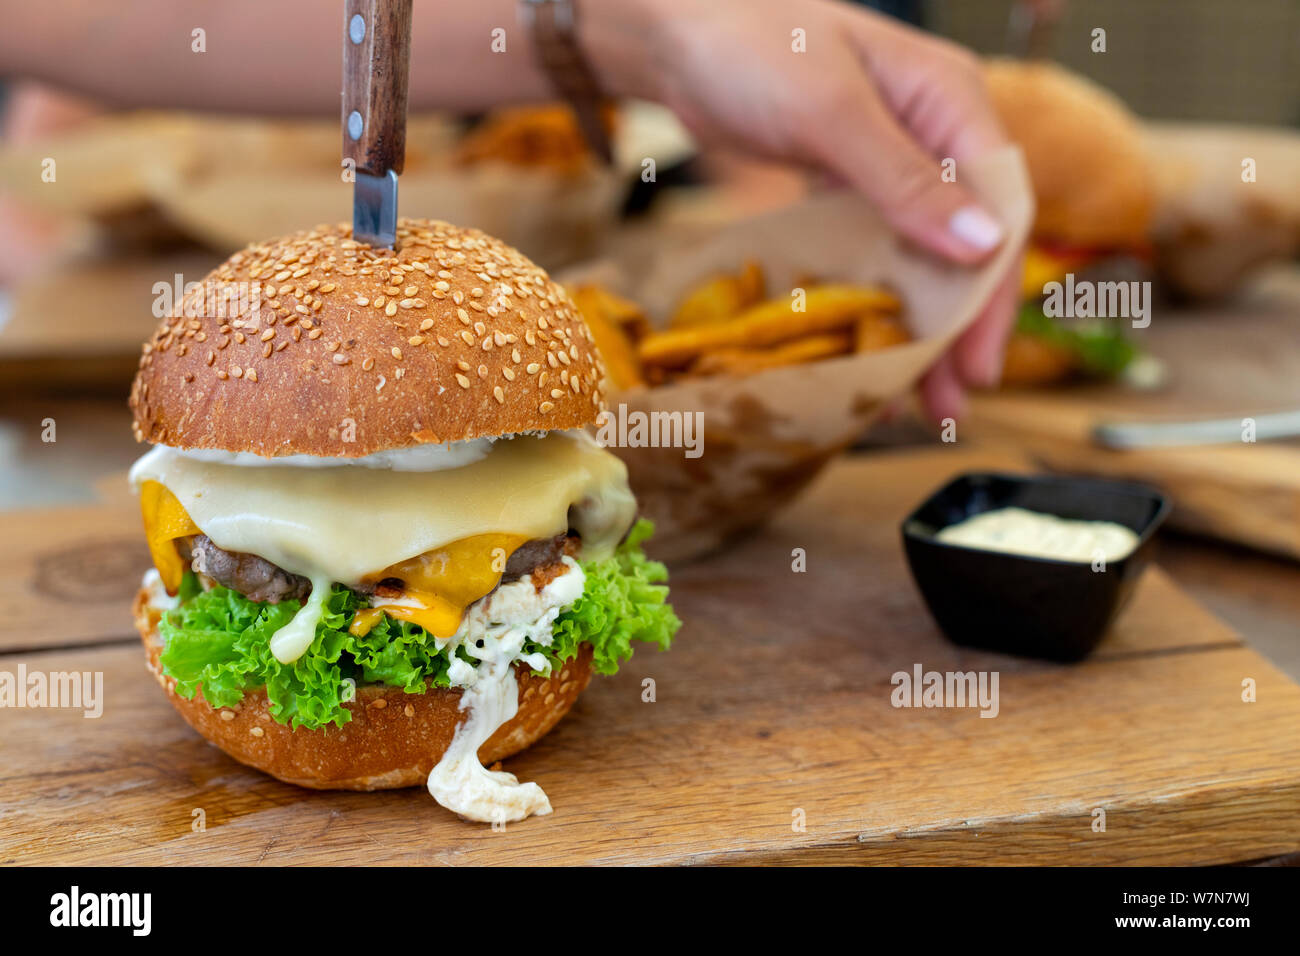 Bild von einem köstlichen saftigen Cheeseburger mit Keilen und Sauce Tartar auf hölzernen Platte serviert. Stockfoto